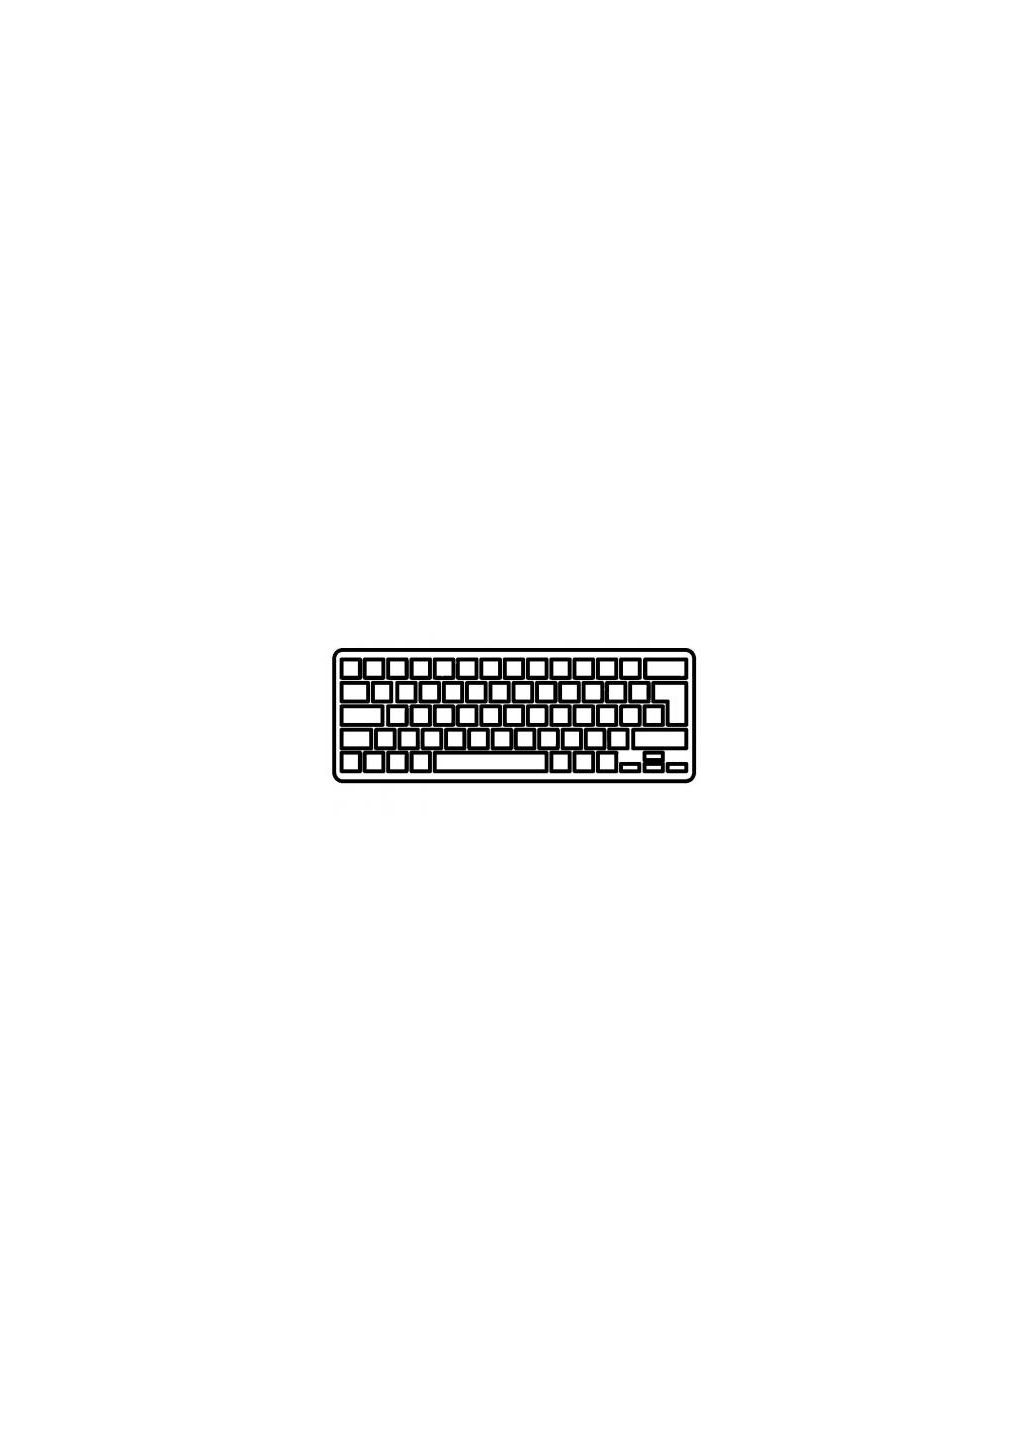 Клавиатура ноутбука Aspire V5471/V5-431 Series черная с подсветкой/без рамки RU (A43556) Acer aspire v5-471/v5-431 series черная с подсветкой/бе (276707560)